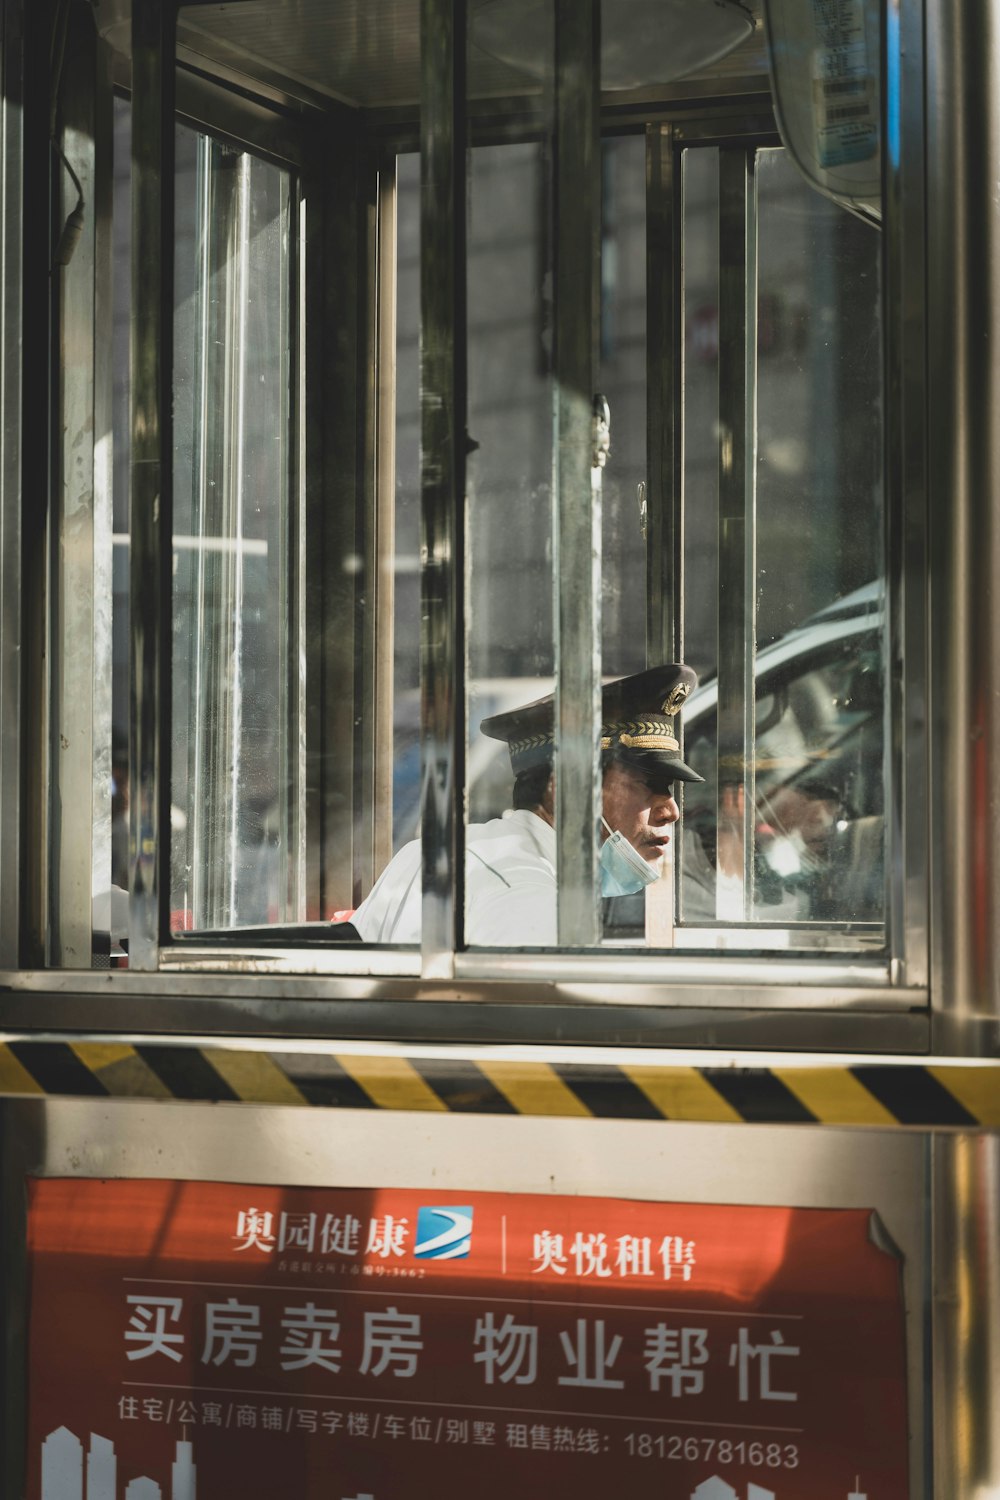 Ein Mann in Polizeiuniform schaut aus dem Fenster